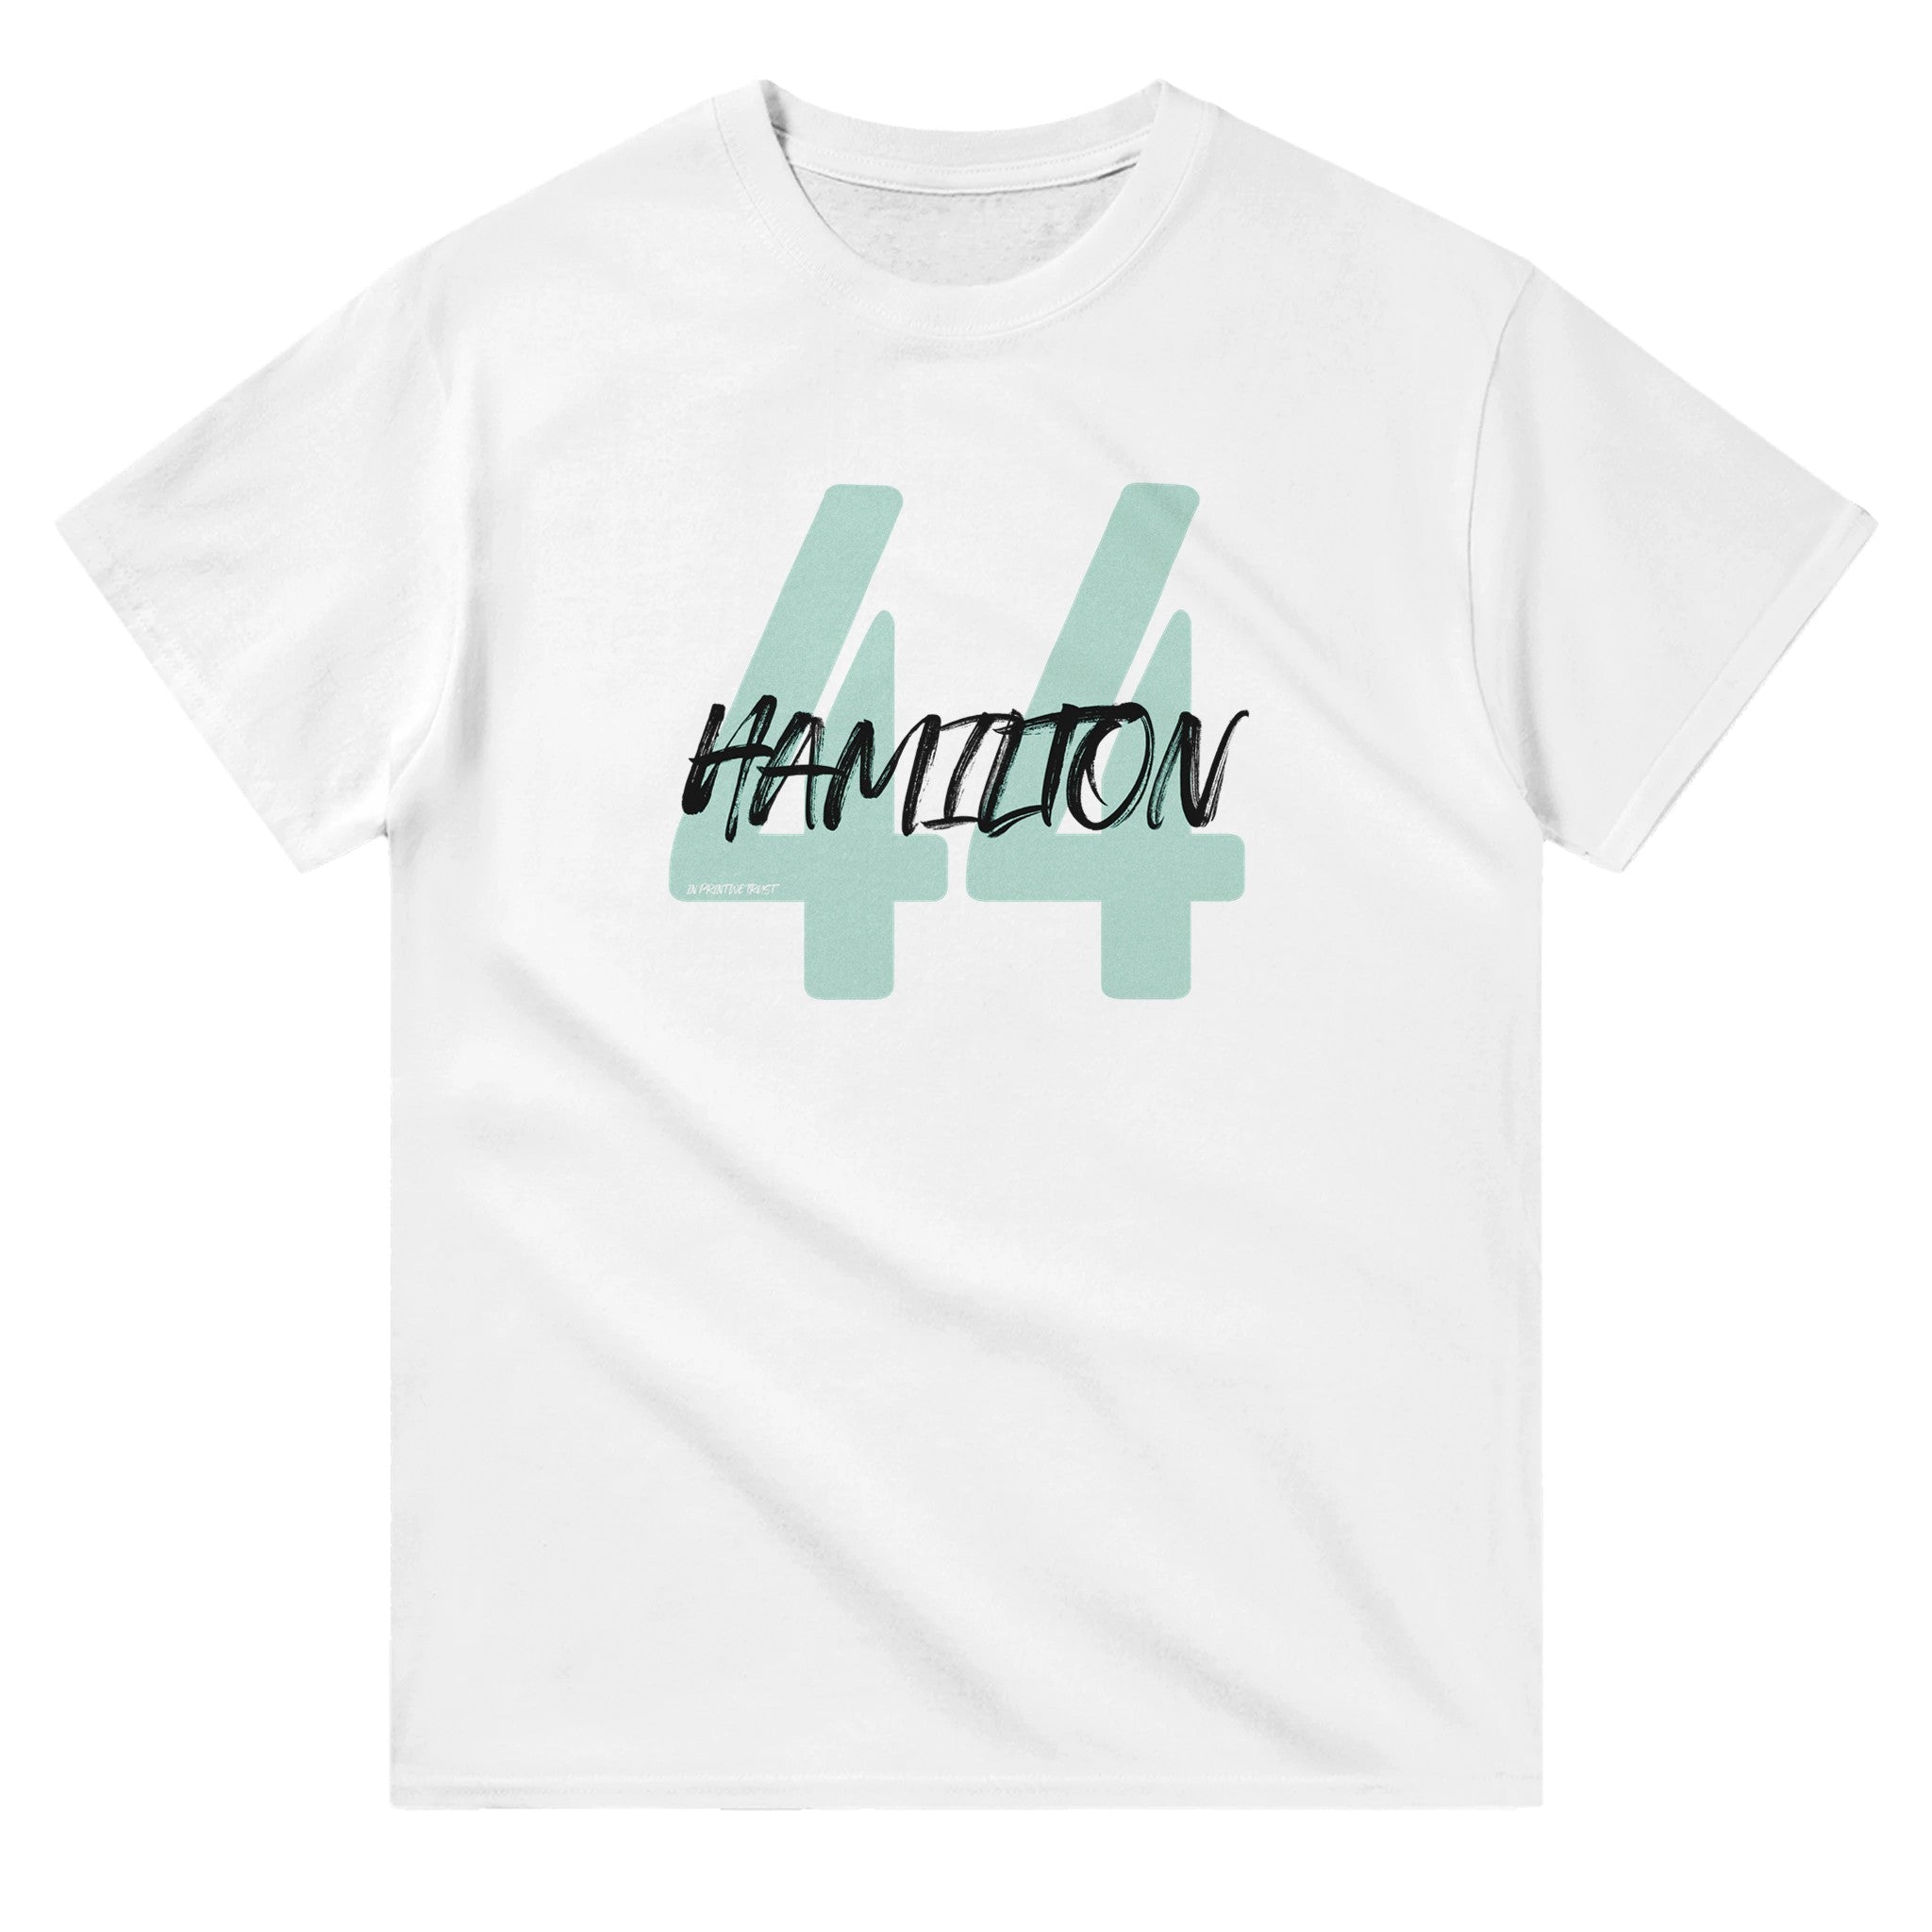 'Hamilton 44' classic tee - In Print We Trust